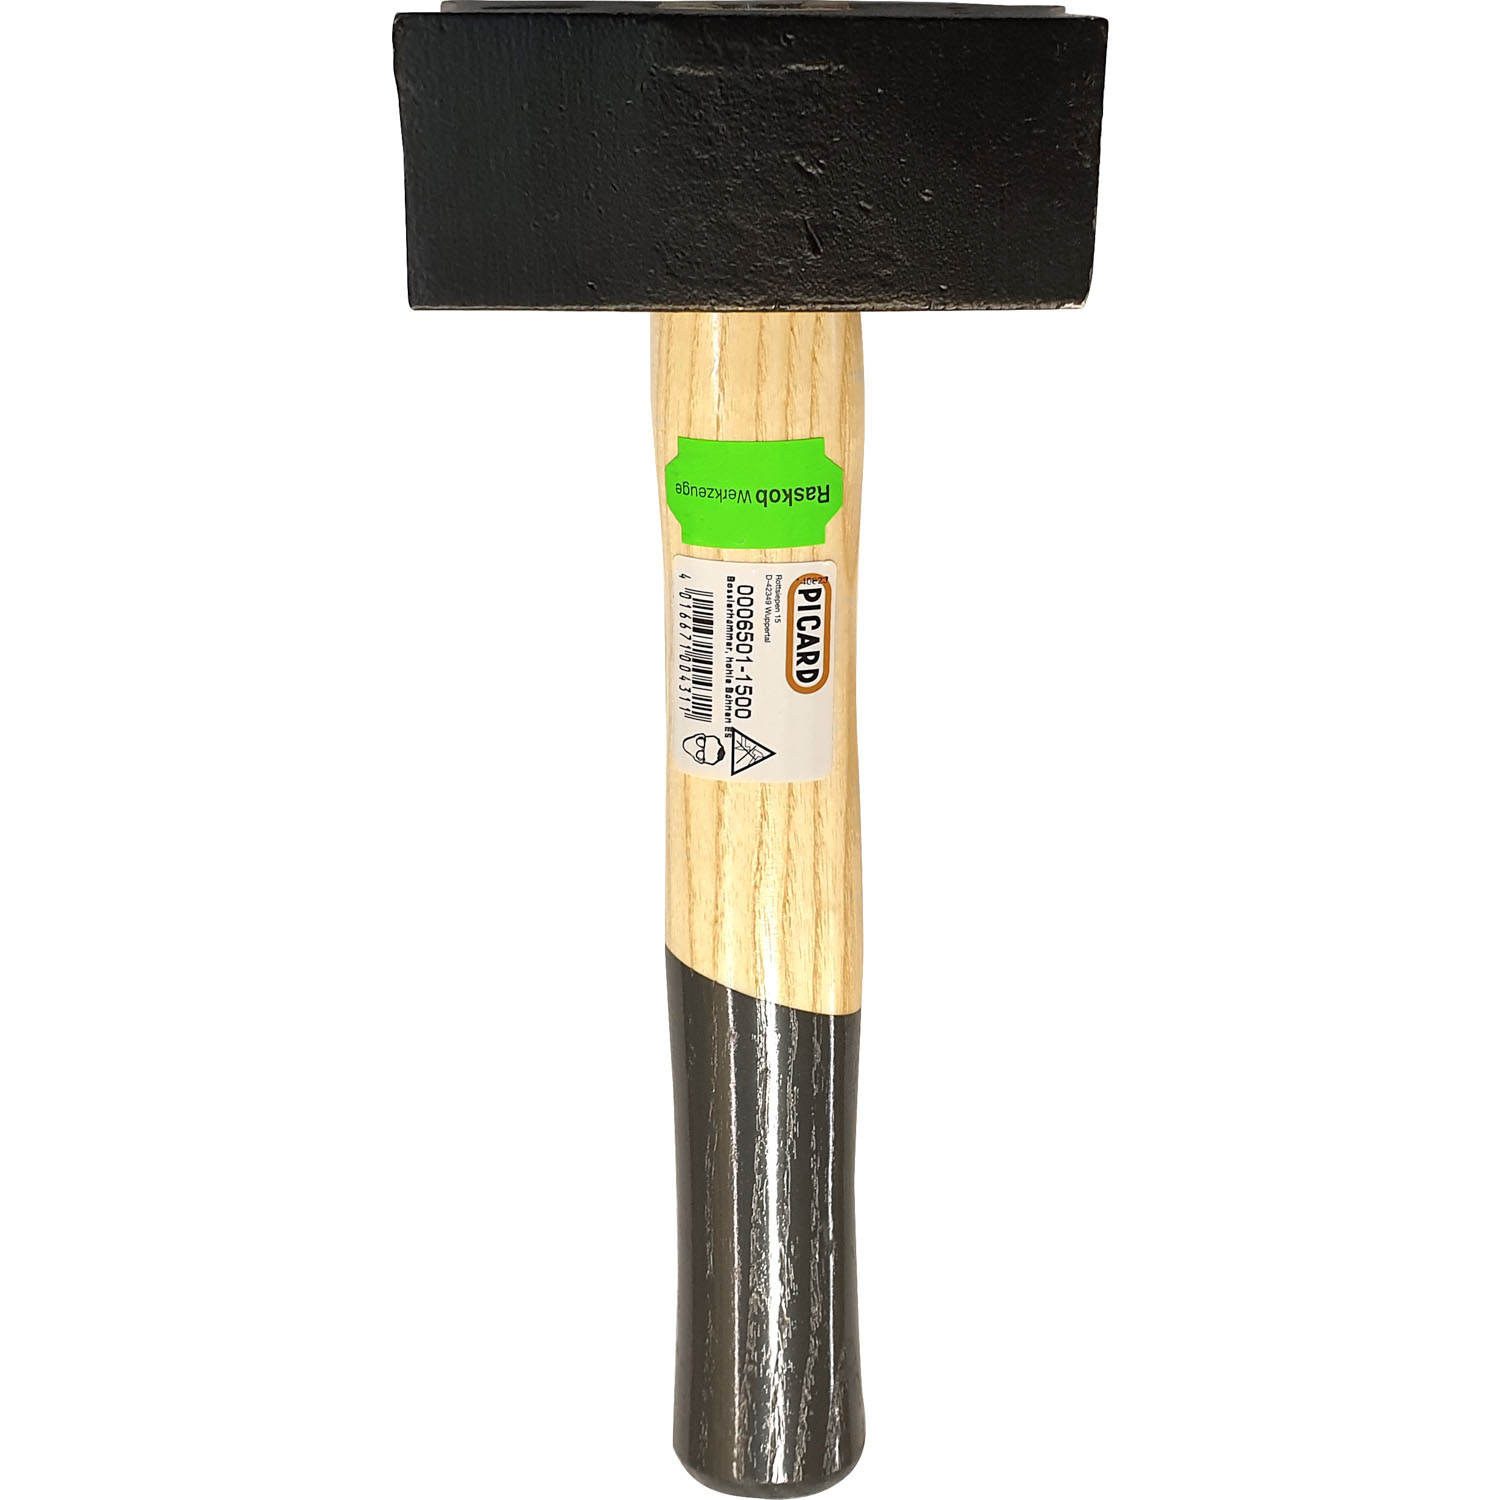 Bossierhammer mit gewölbten Hohlbahnen 1,5 kg Kopfgewicht